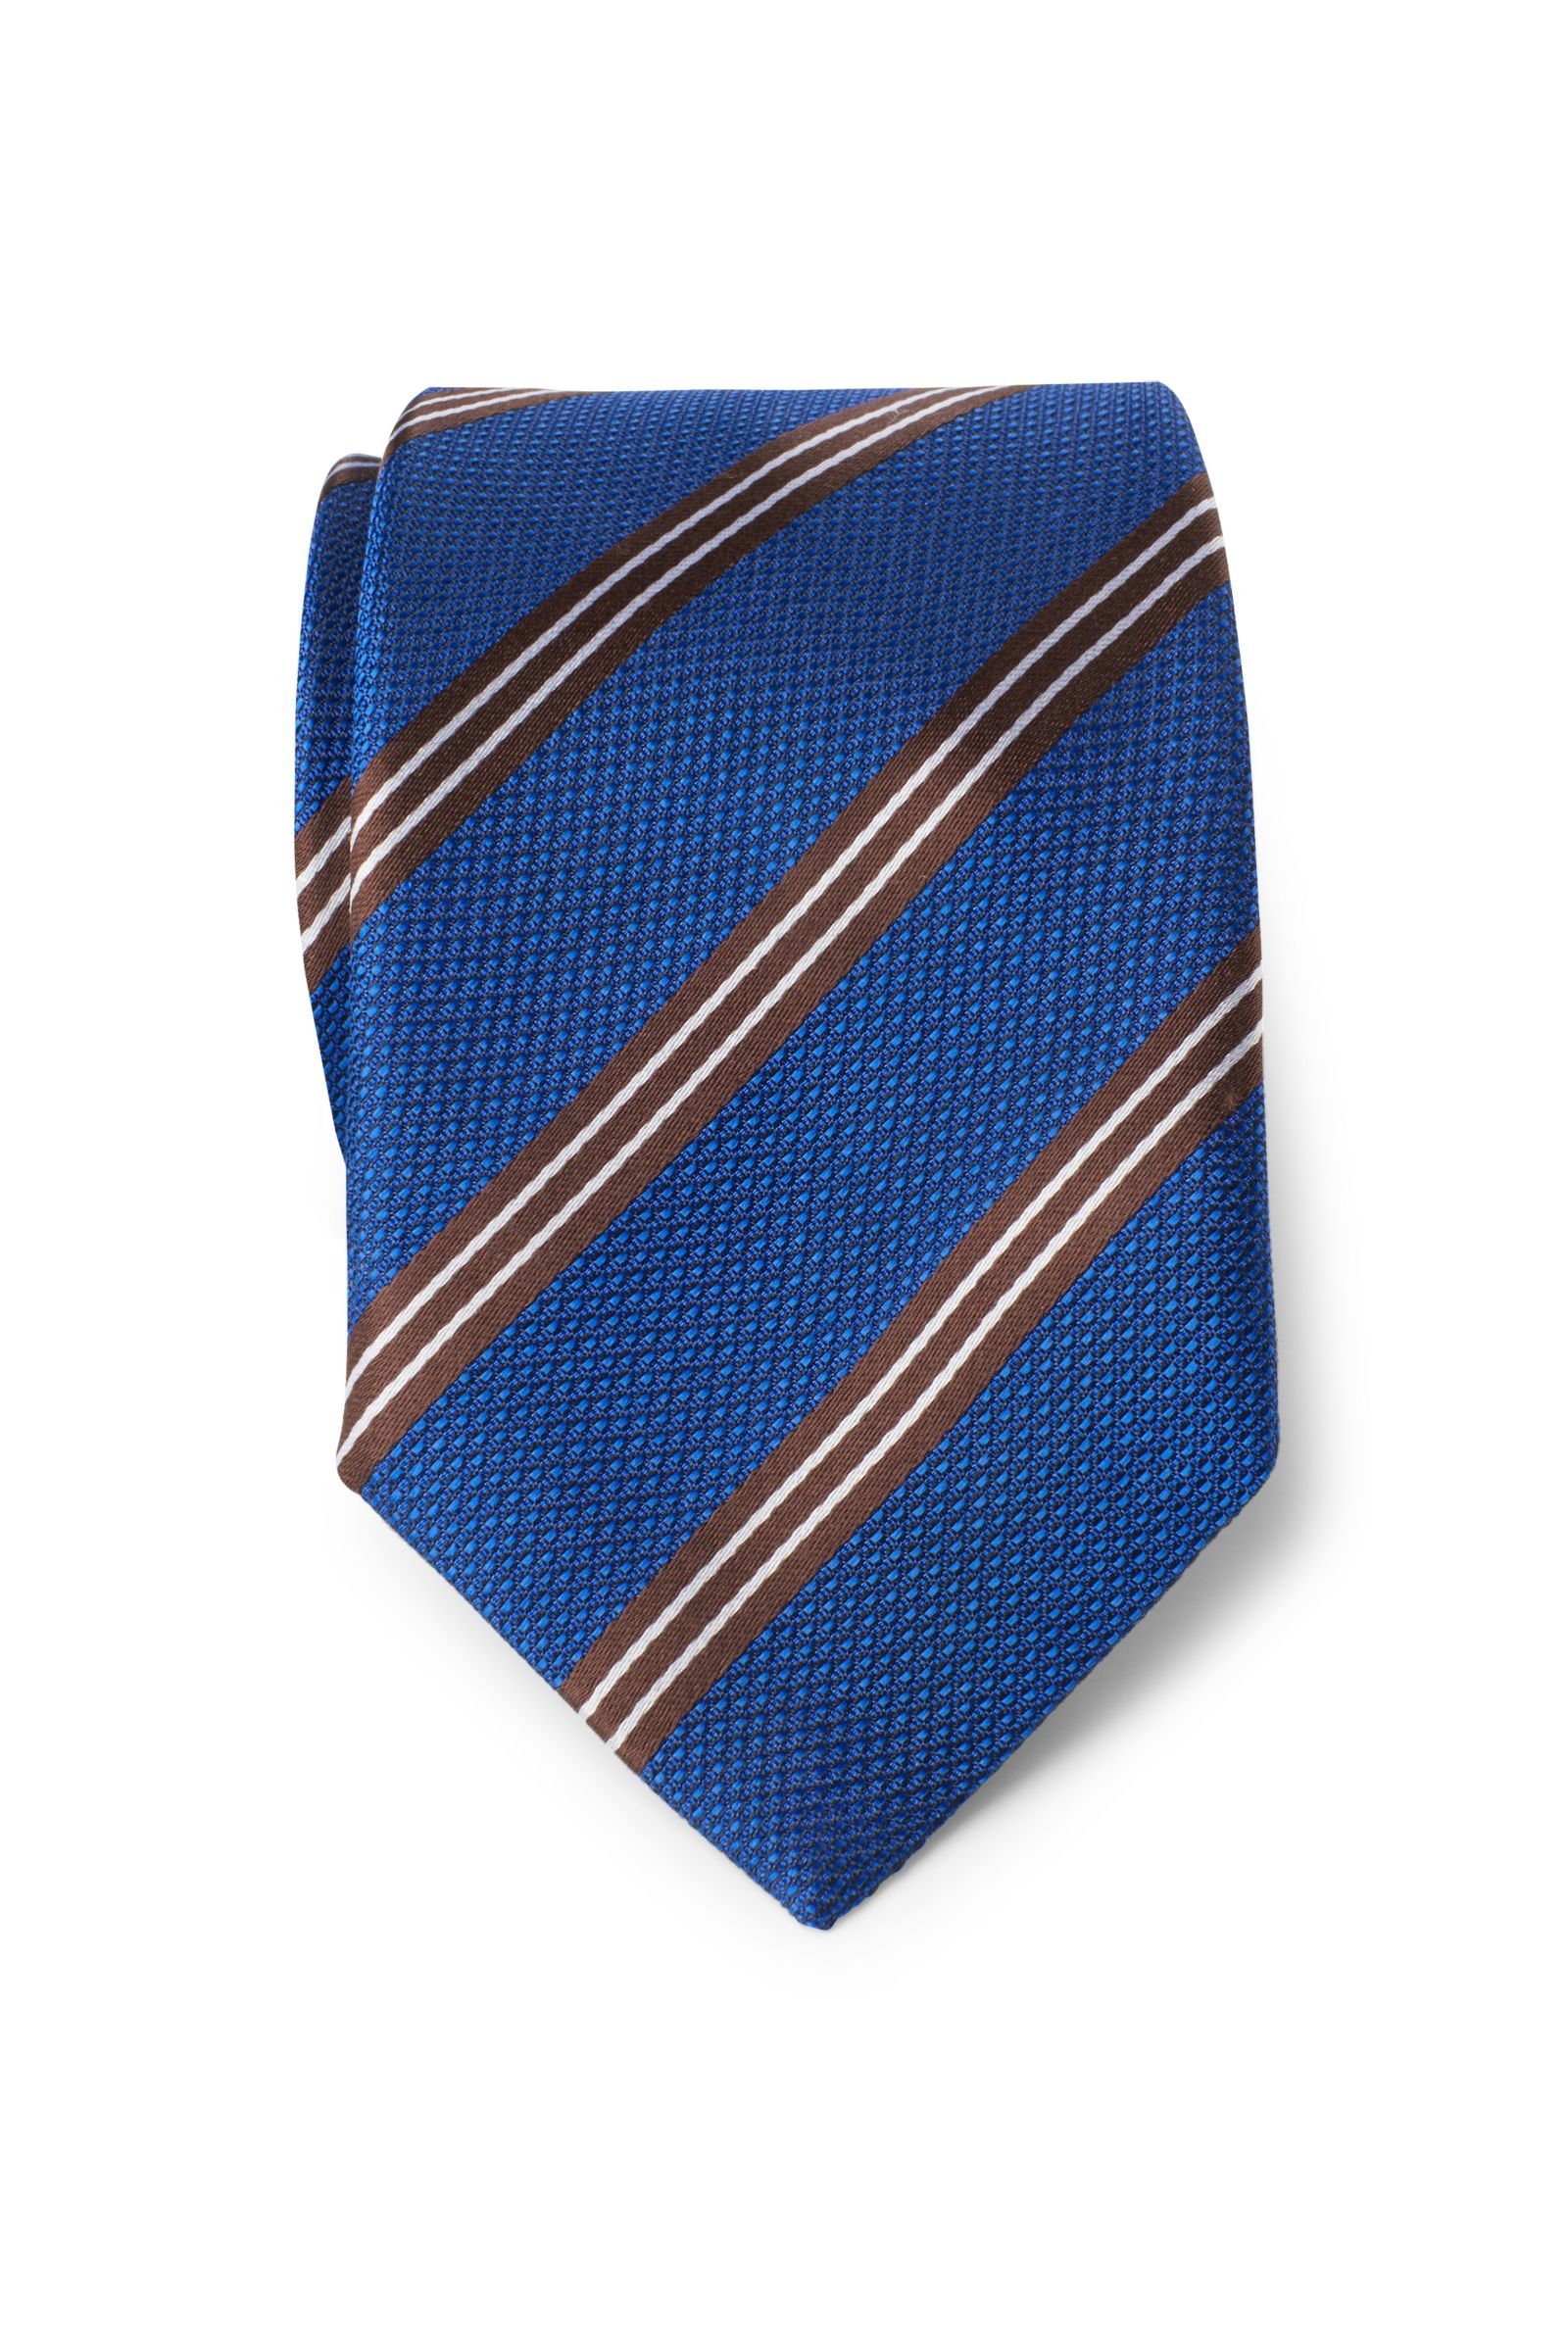 Silk tie blue/dark brown striped